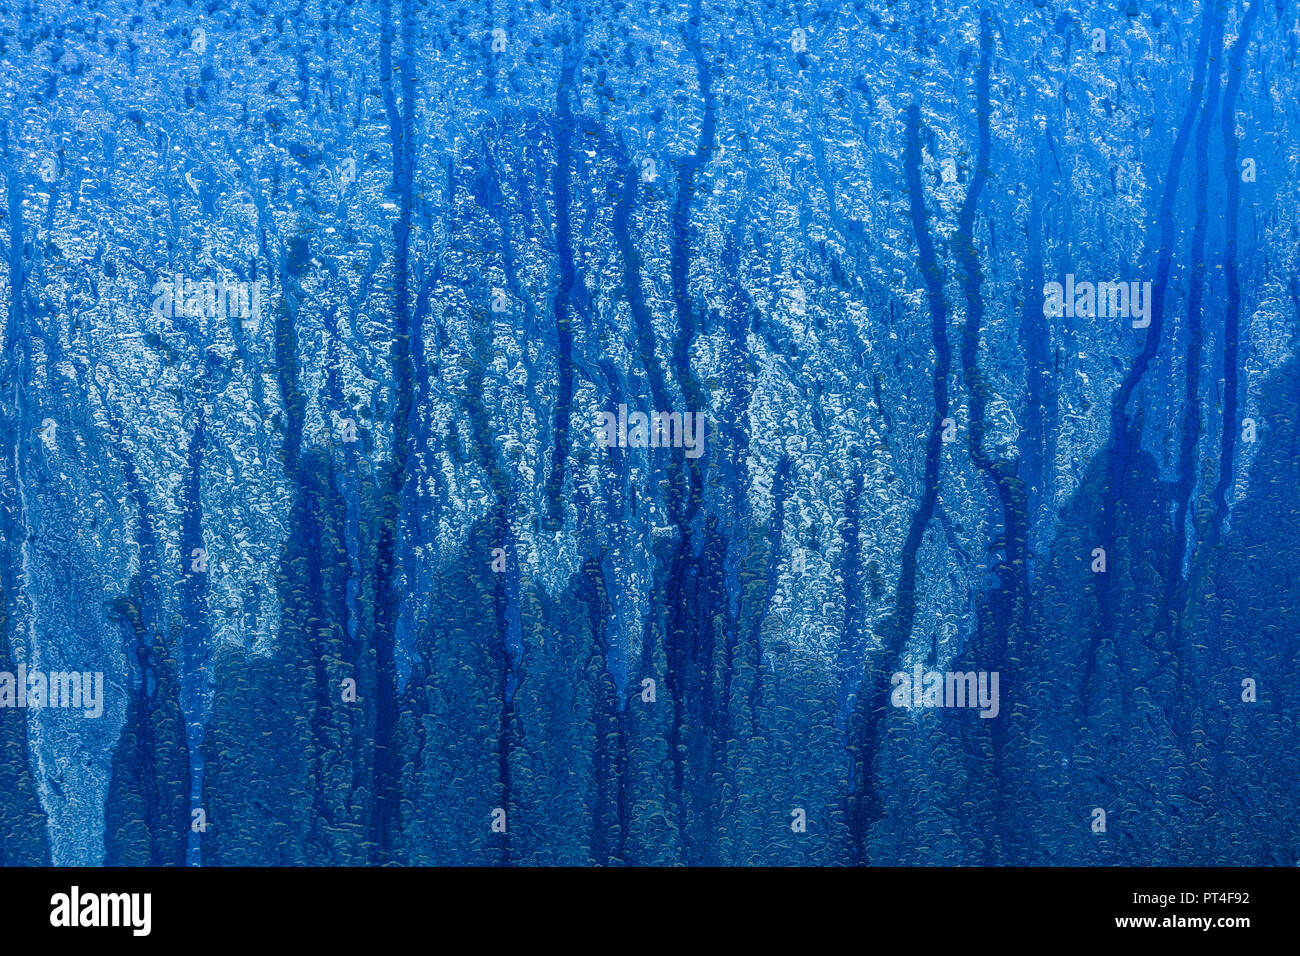 Resumen artístico de suciedad con rayas de agua sobre un fondo azul. Foto de stock